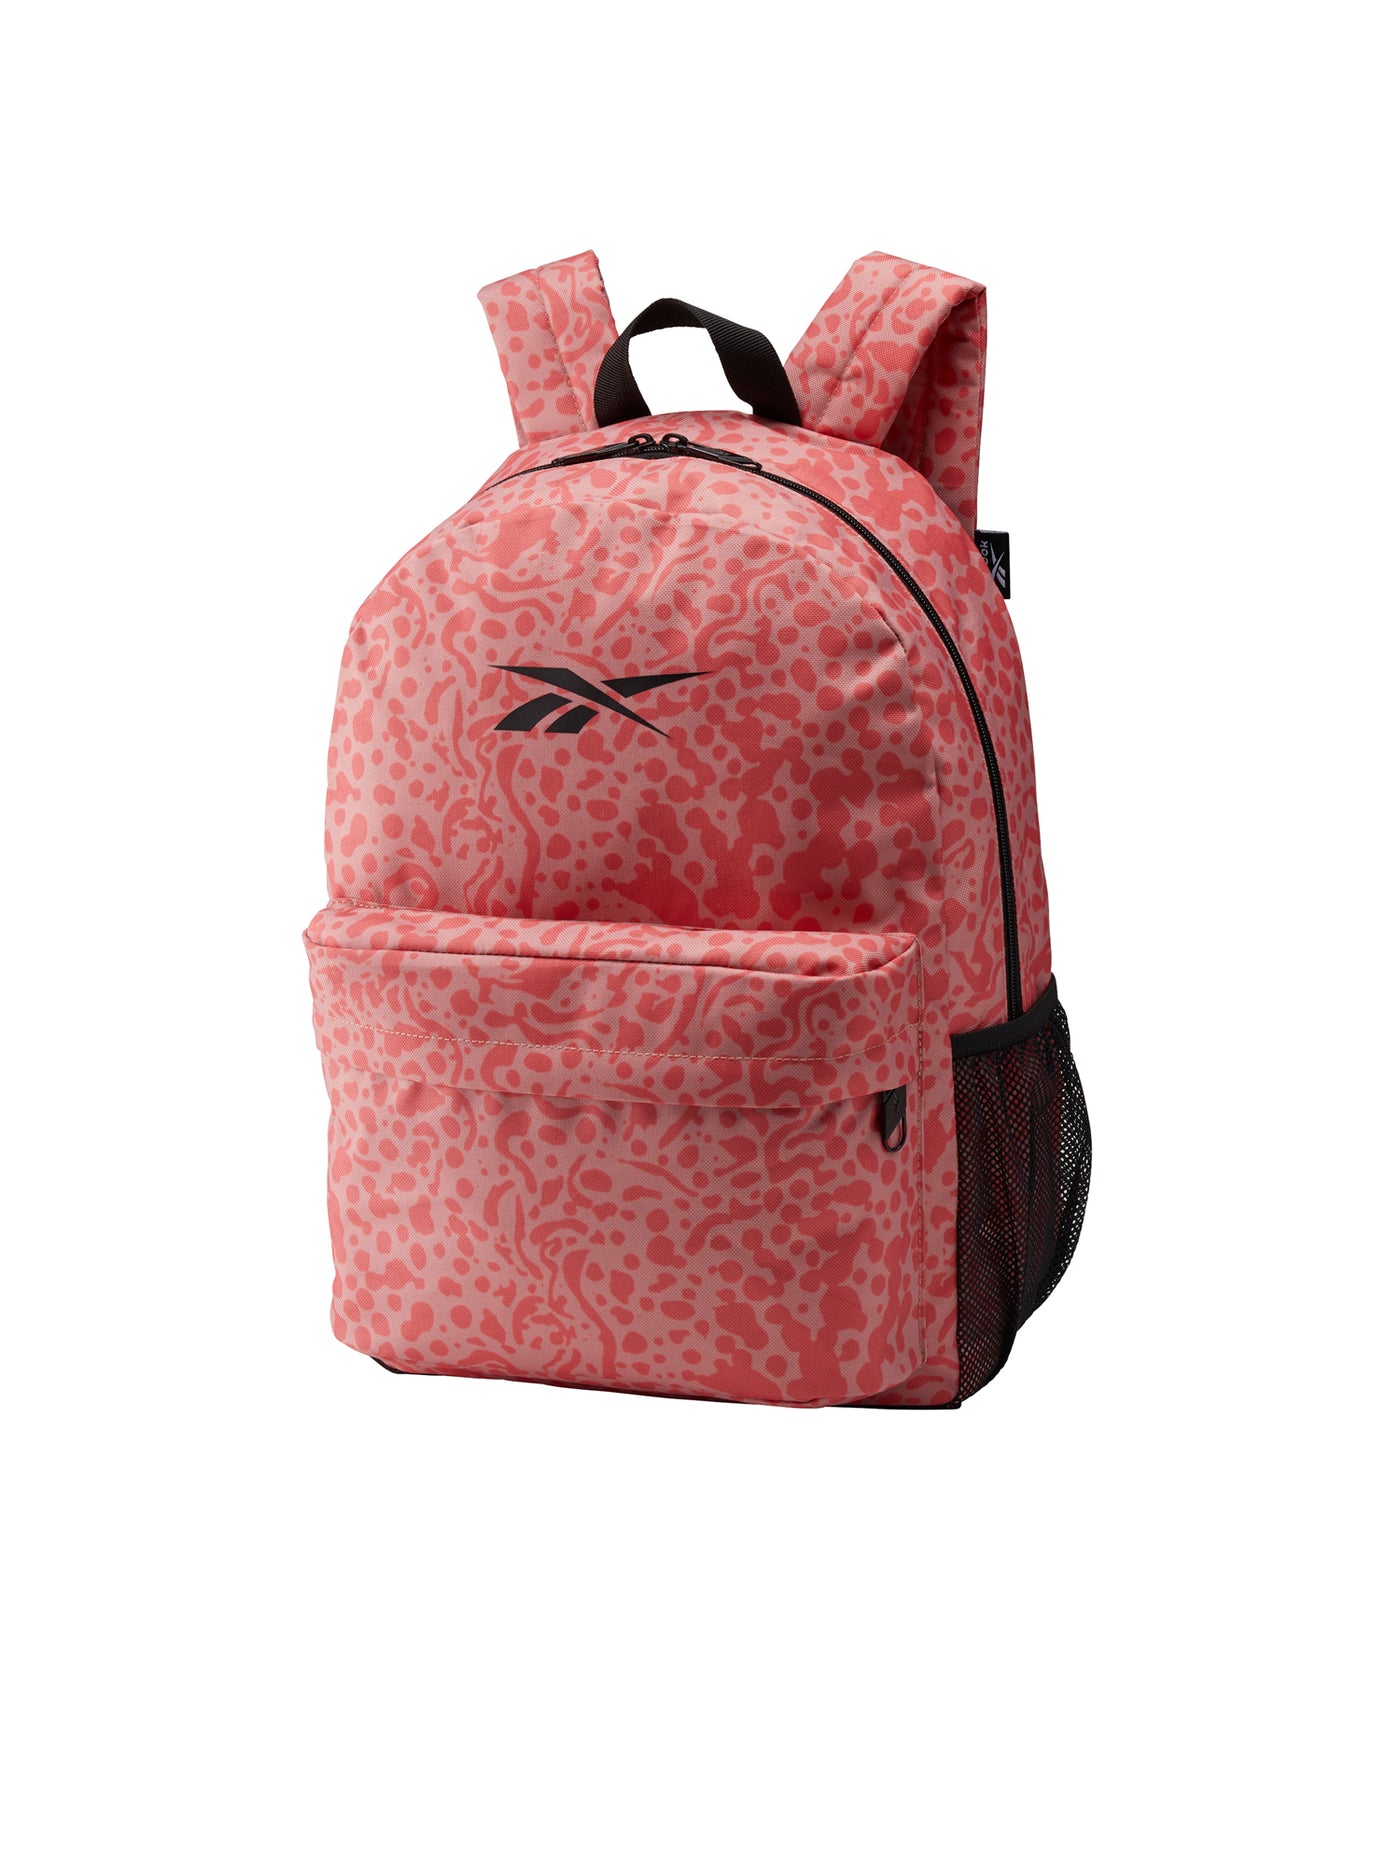 Backpack - Modern Safari